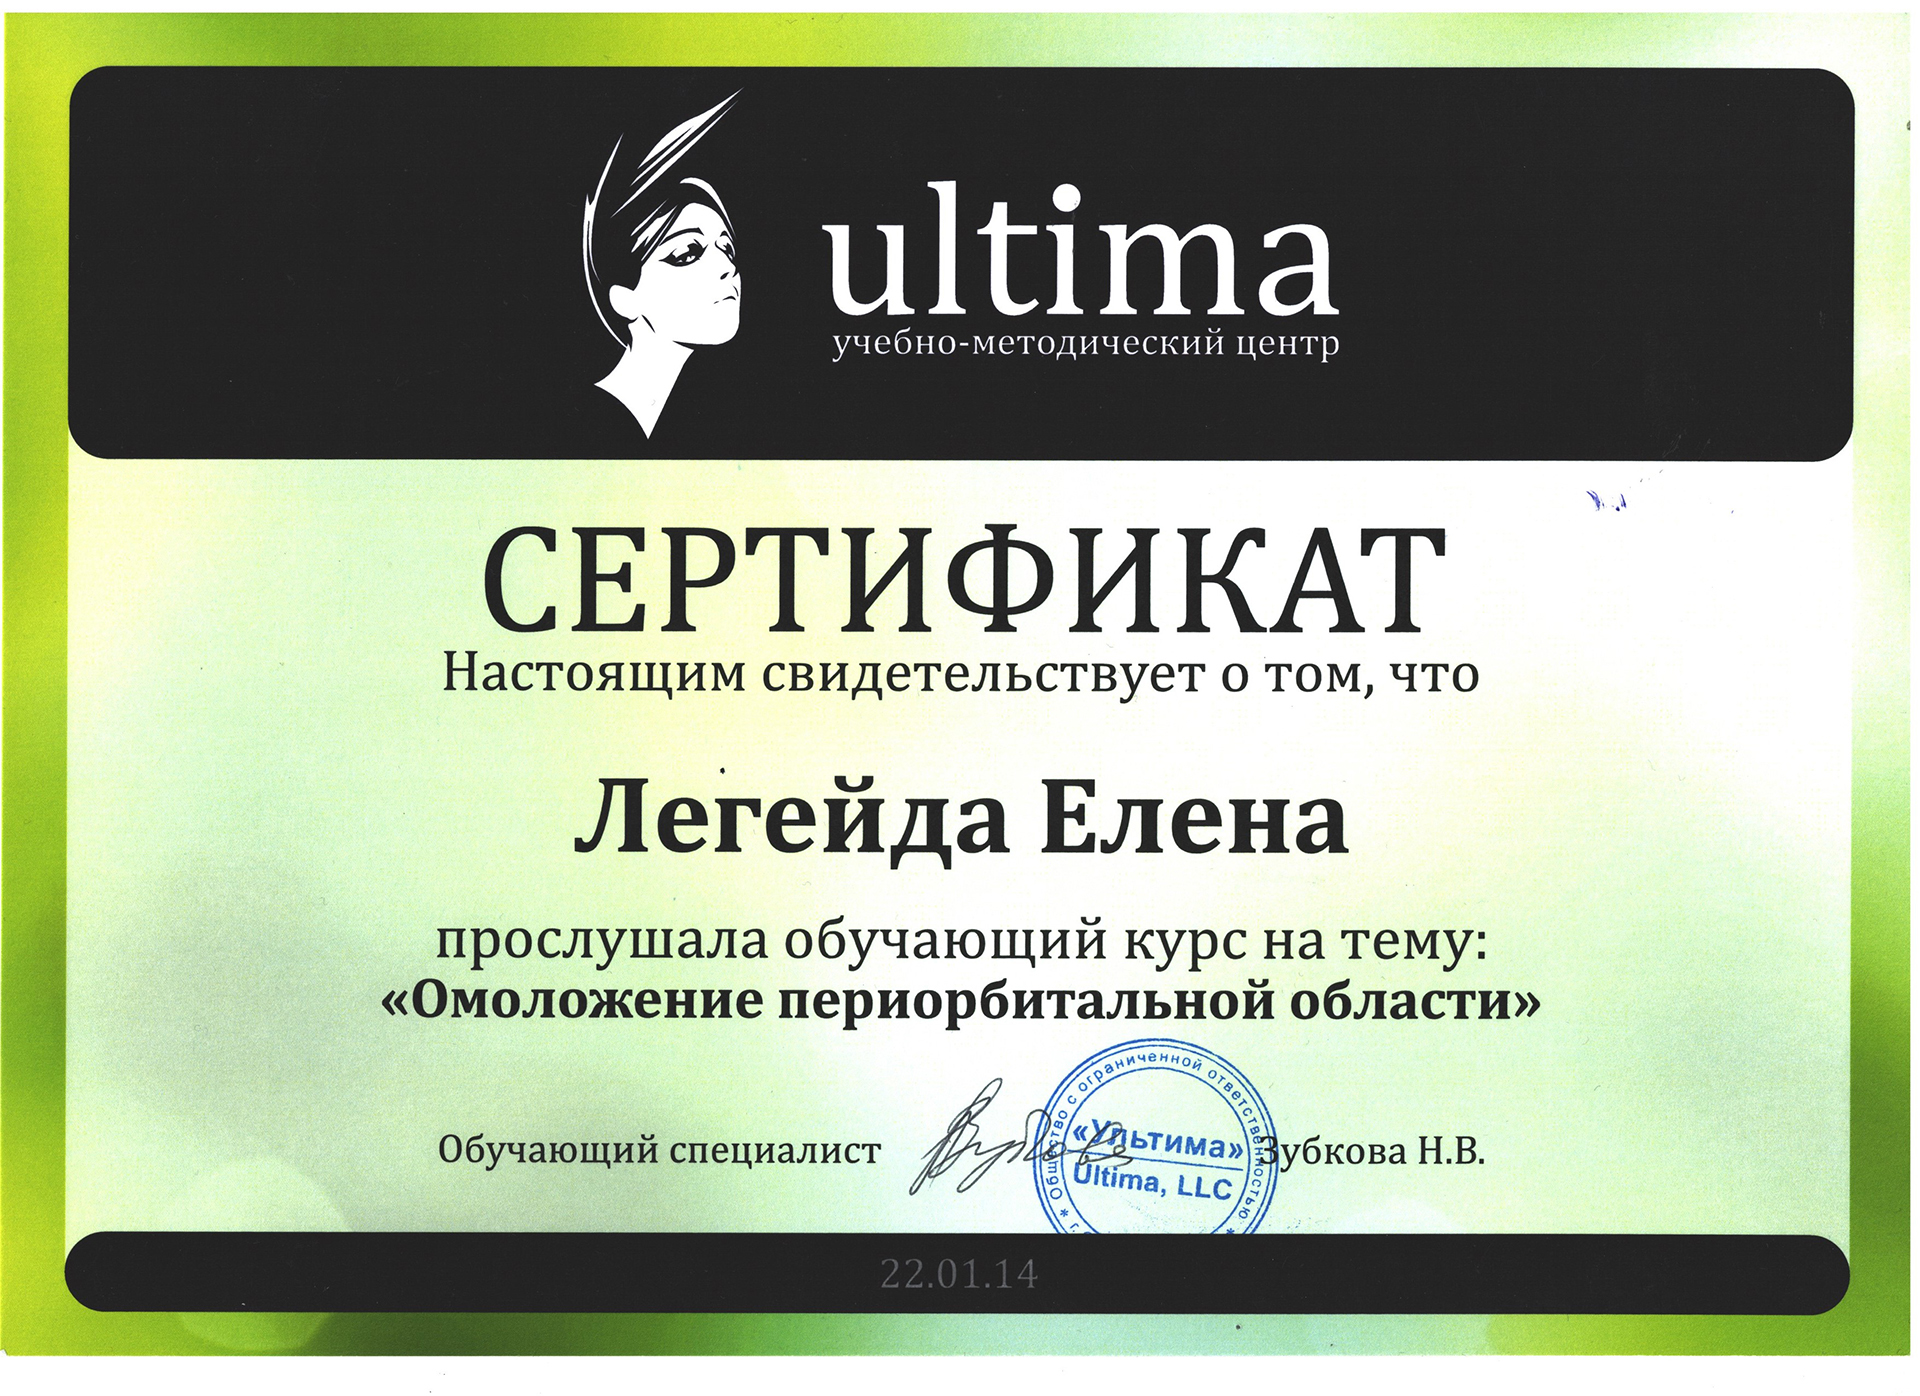 Сертификат — Омоложение периорбитальной области. Легейда Елена Валерьевна